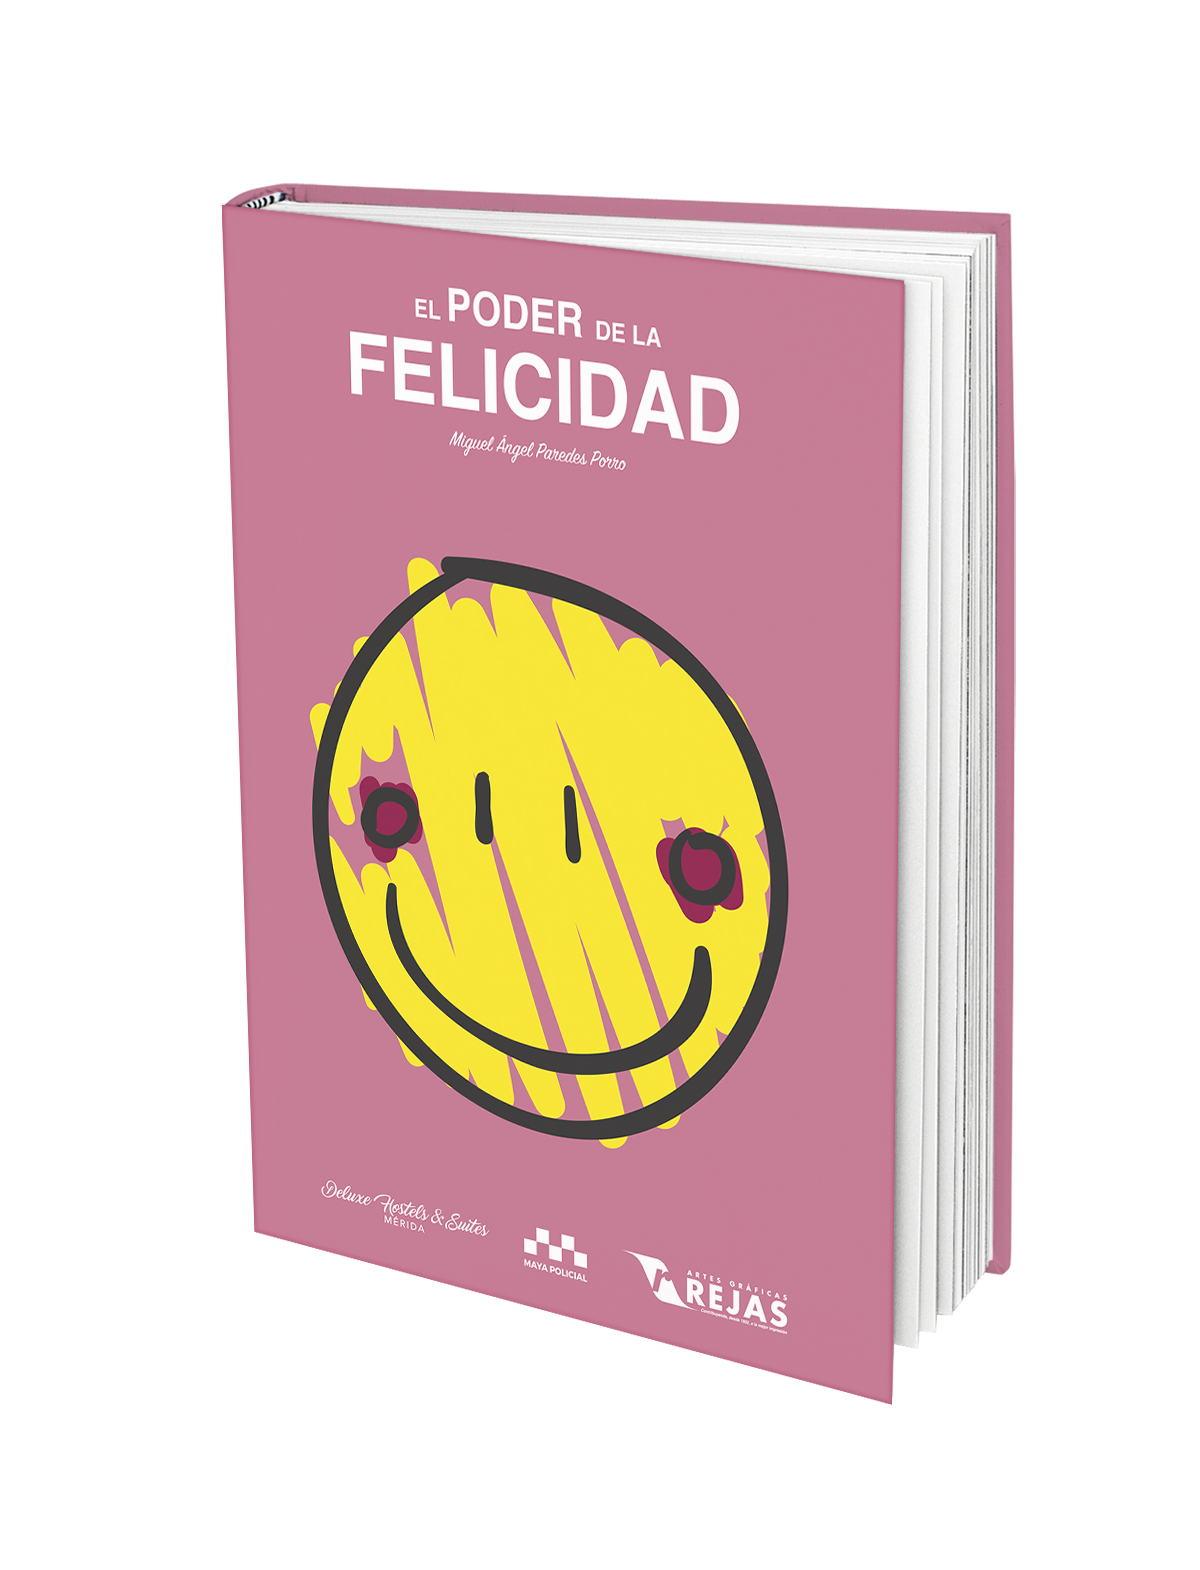 El poder de la felicidad, Miguel Ángel Paredes Porro, Maya Policial, libro